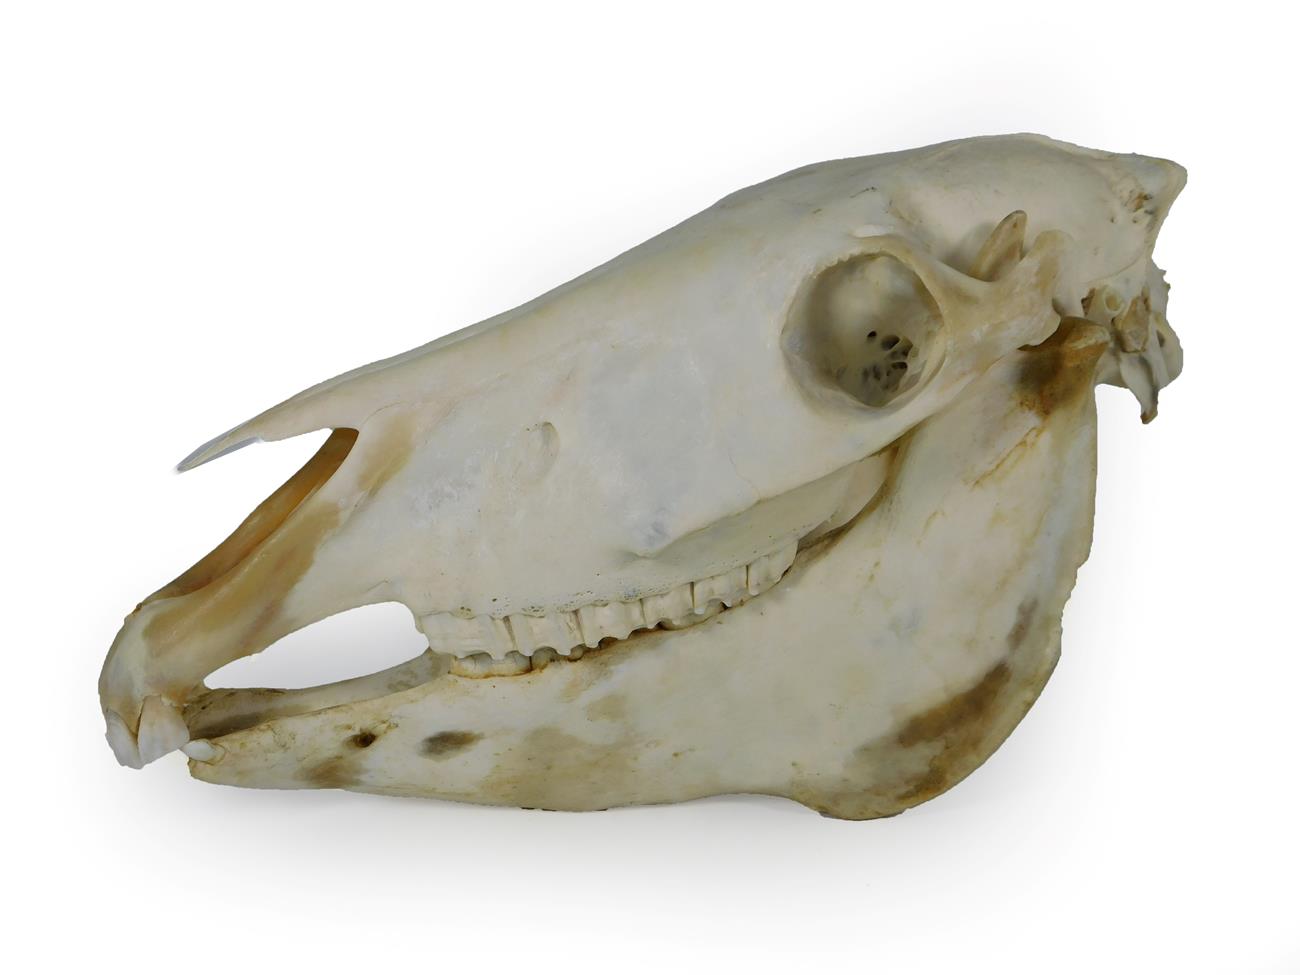 Lot 87 - Skulls/Anatomy: Burchell's Zebra Skull (Equus quagga), modern, complete bleached skull, 46cm by...